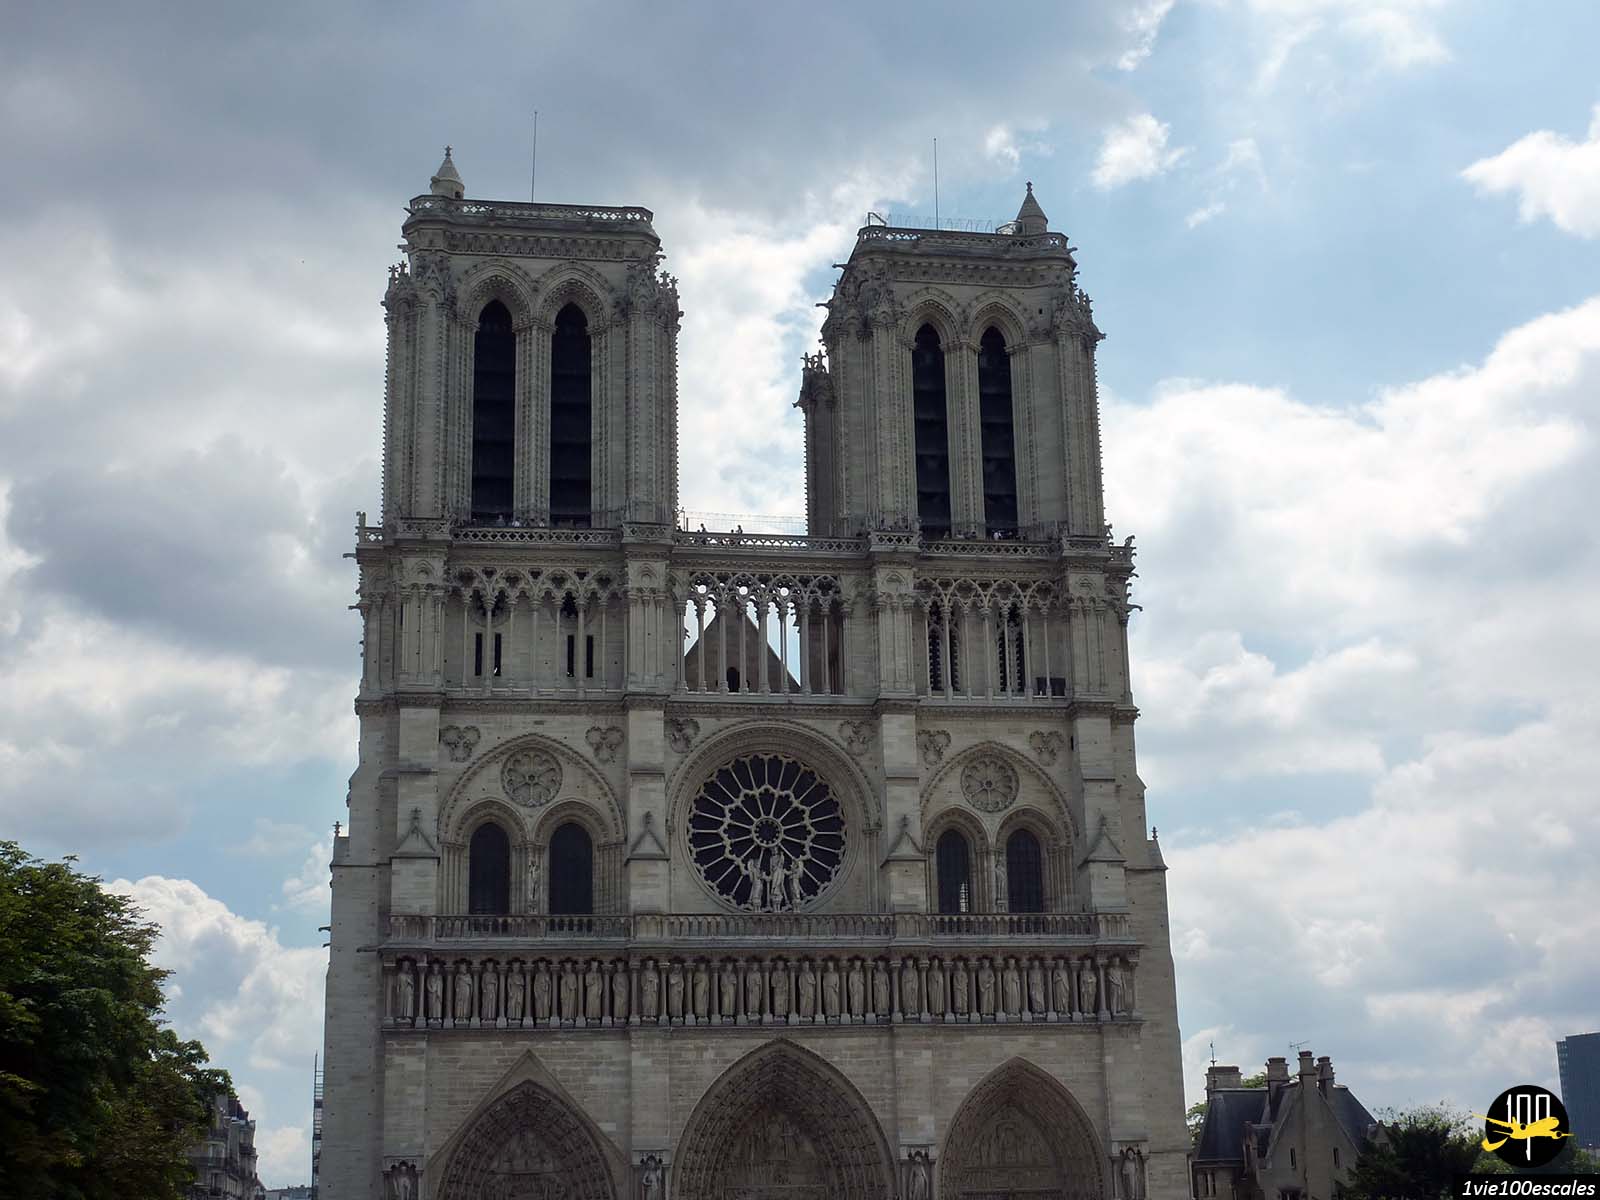 La cathédrale Notre-Dame de Paris, chef d'œuvre de l'architecture gothique, est le monument le plus visité de France